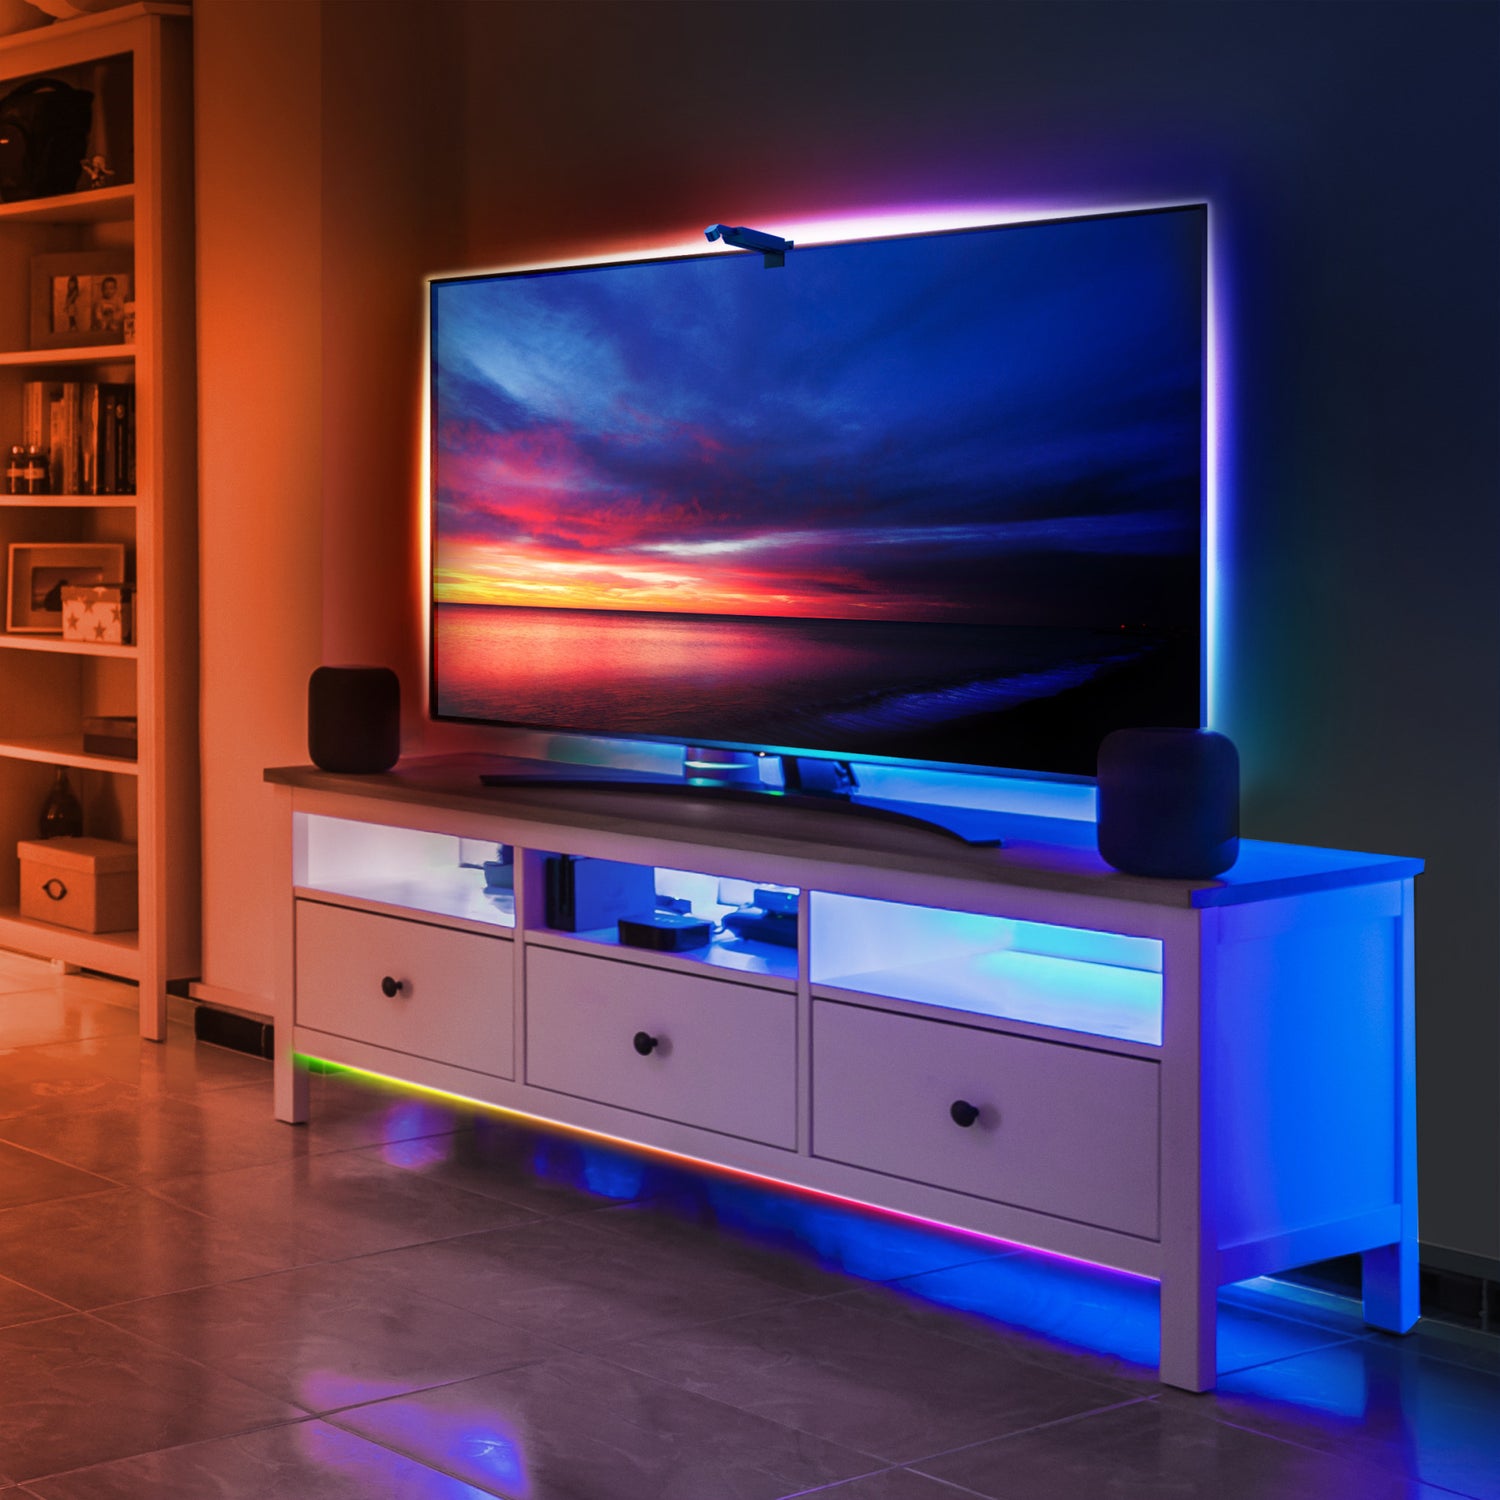 Smart TV Backlight with Color Sensor